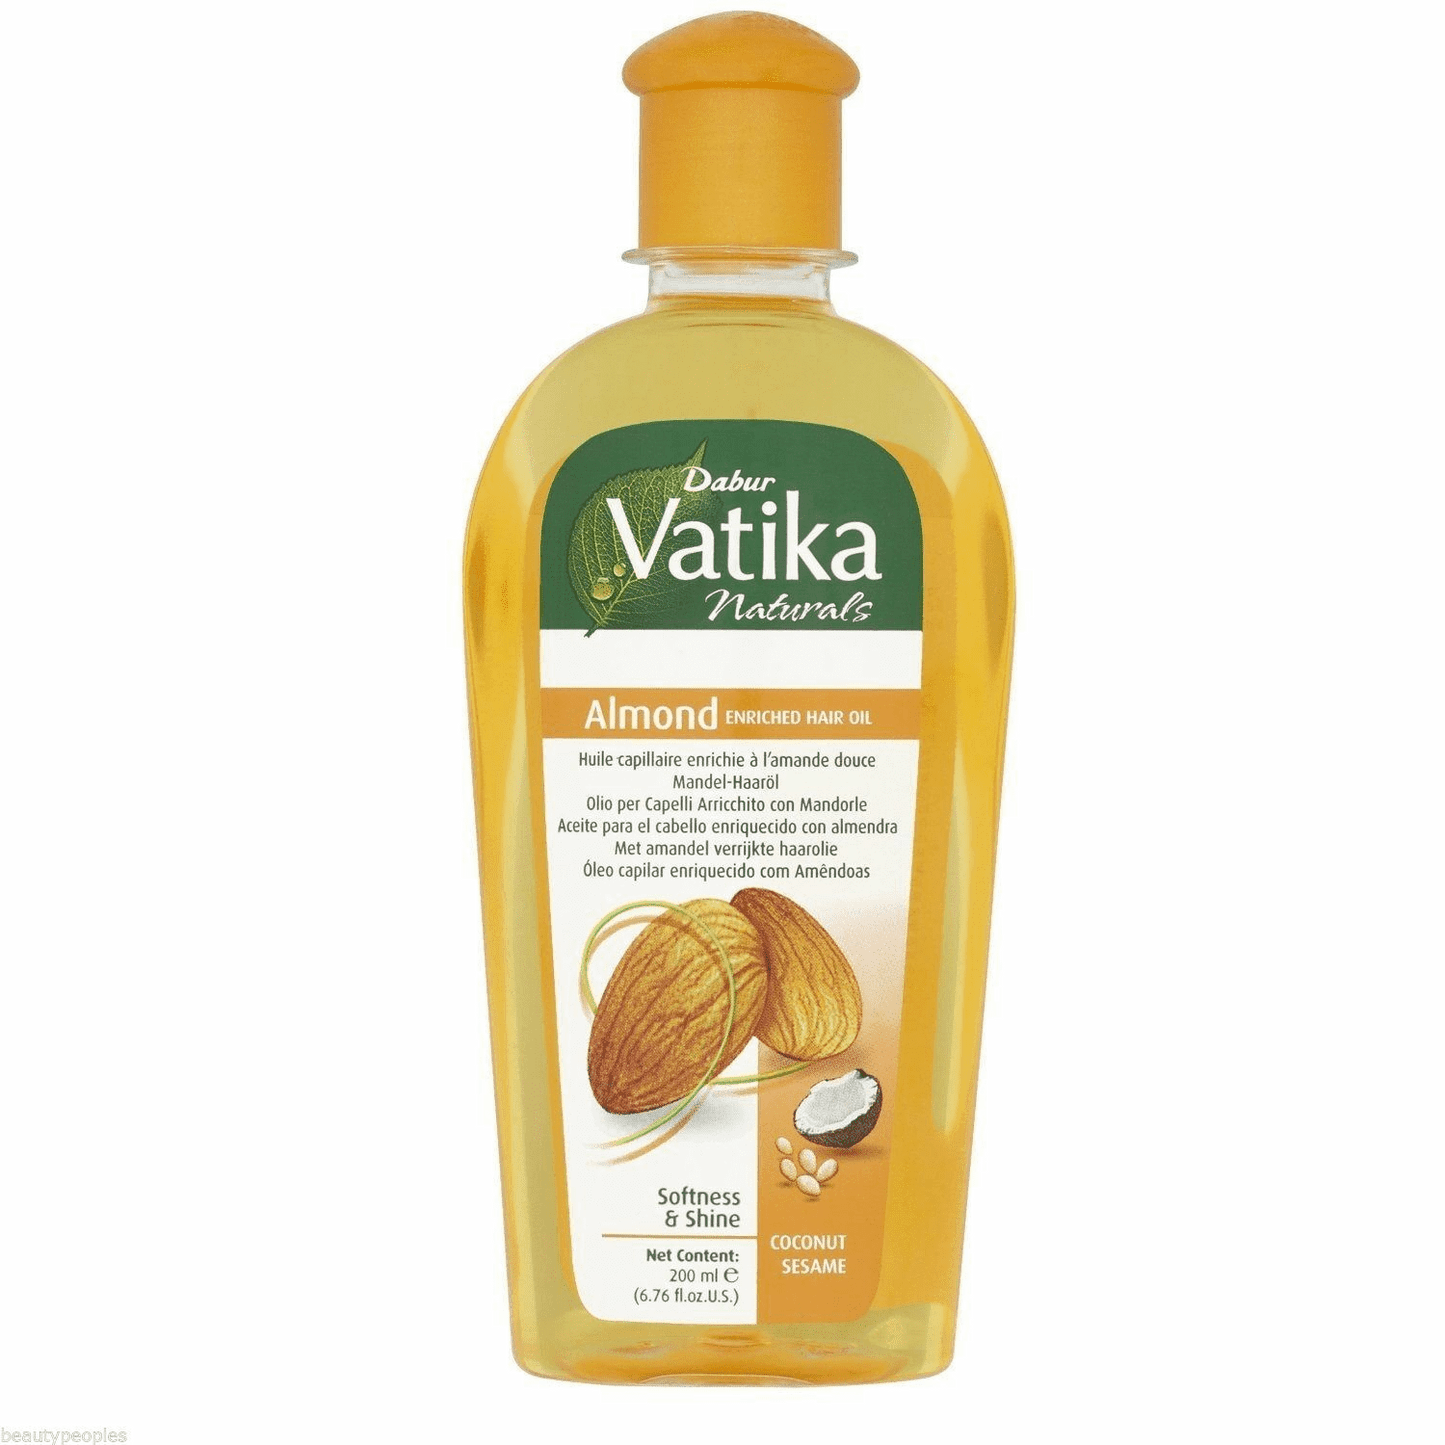 Dabur Vatika Naturals Almond Enriched Hair Oil - 200Ml